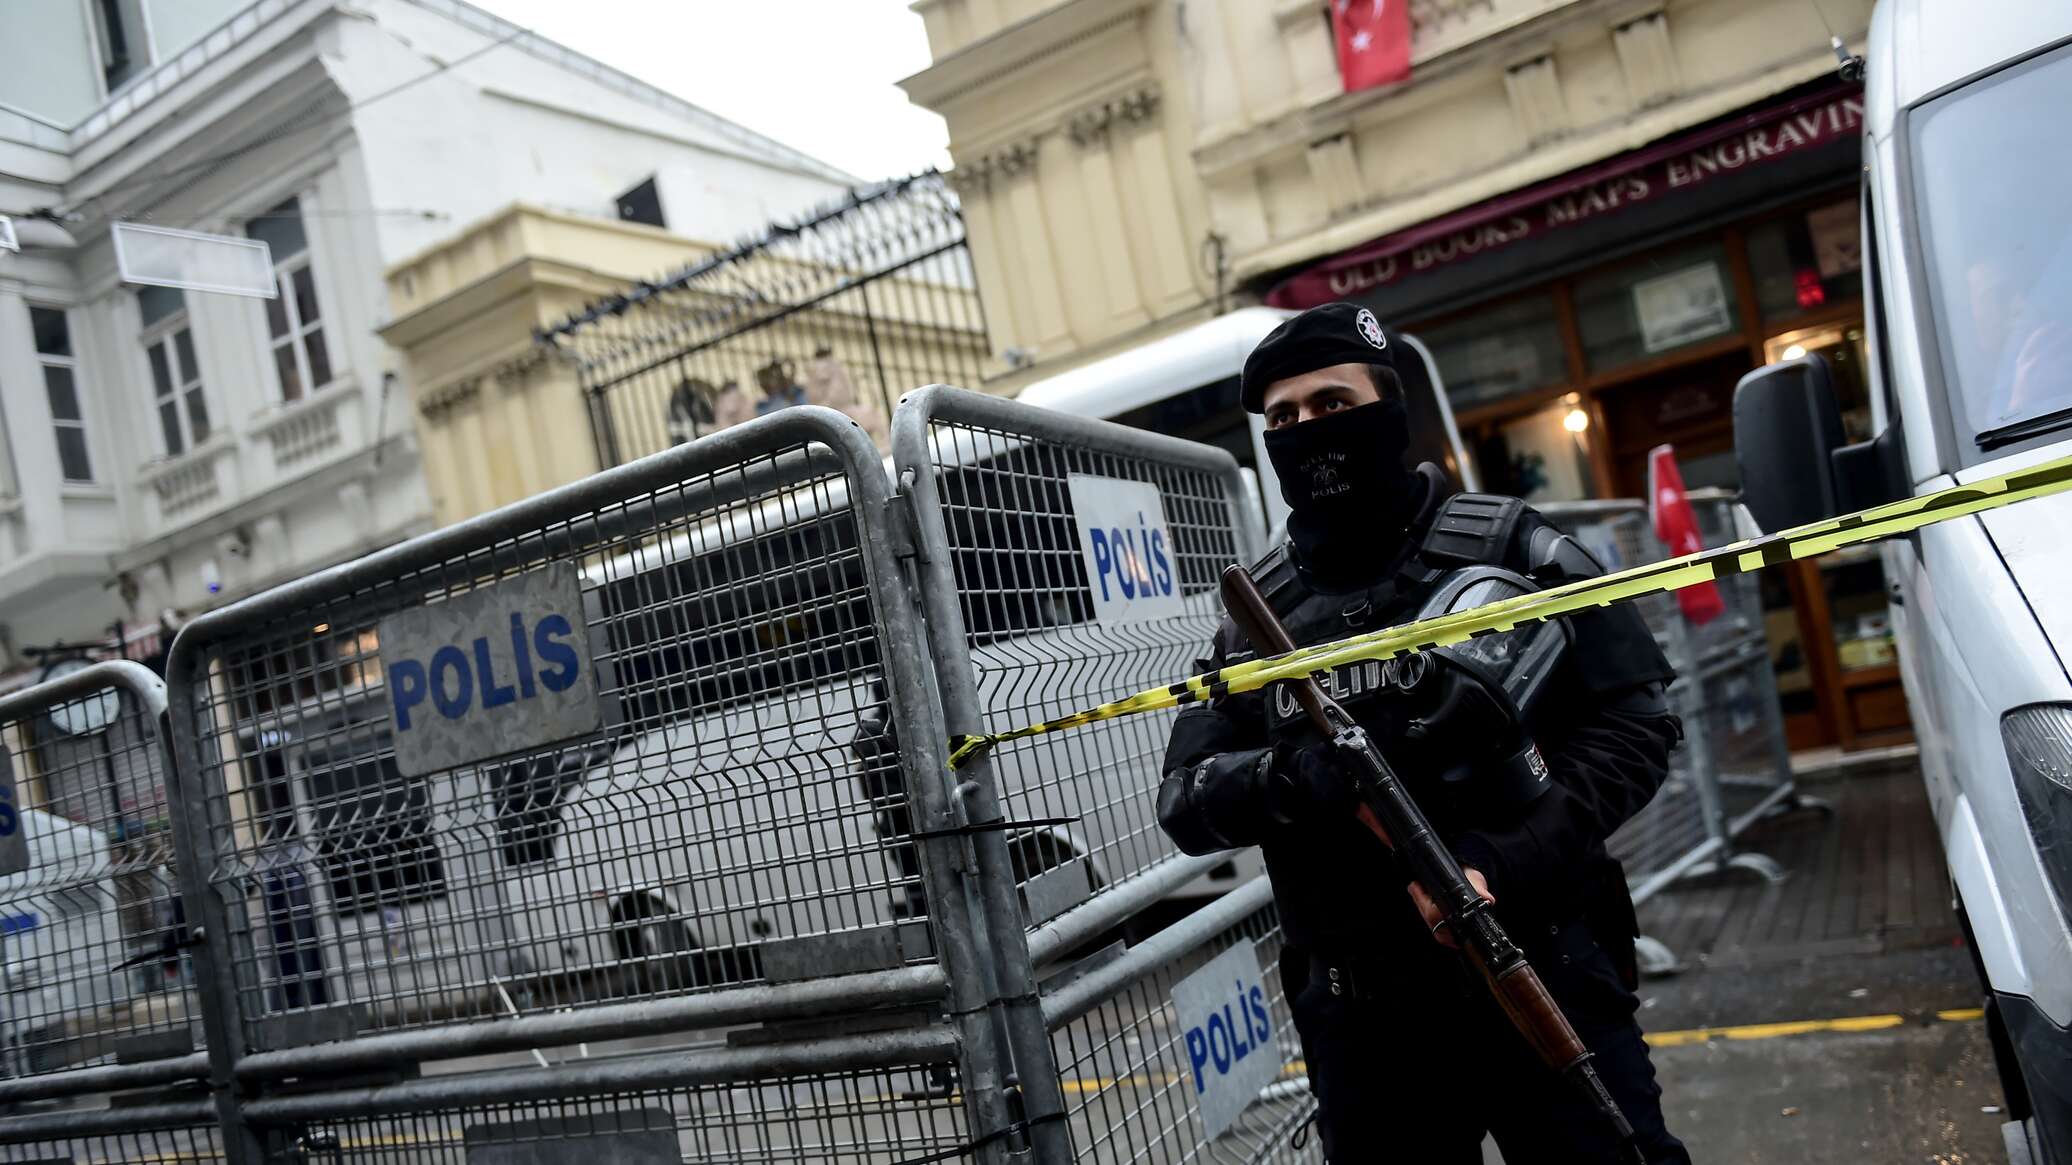 Нападение в стамбуле. Турецкие спецслужбы. Полиция в Стамбуле. Главное управление полиции Стамбула. Турецкий полицейский участок.